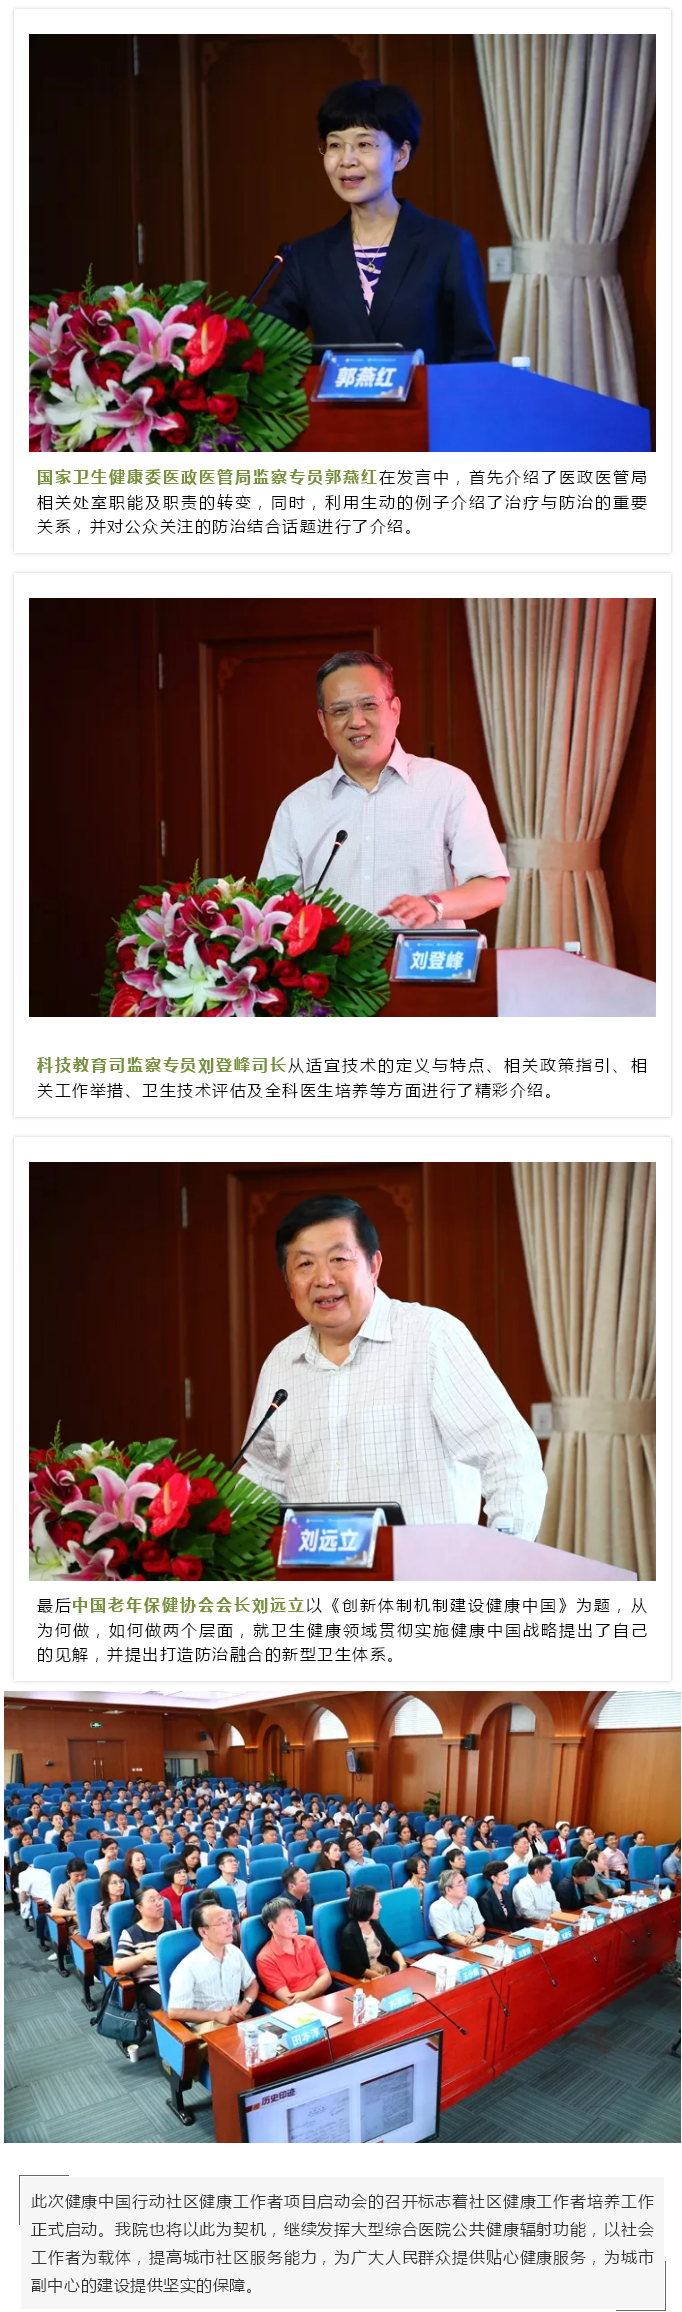 健康中国行动社区健康工作者项目启动会暨第一届中国老年健康教育与健康促进研讨会在我院顺利召开--2.jpg